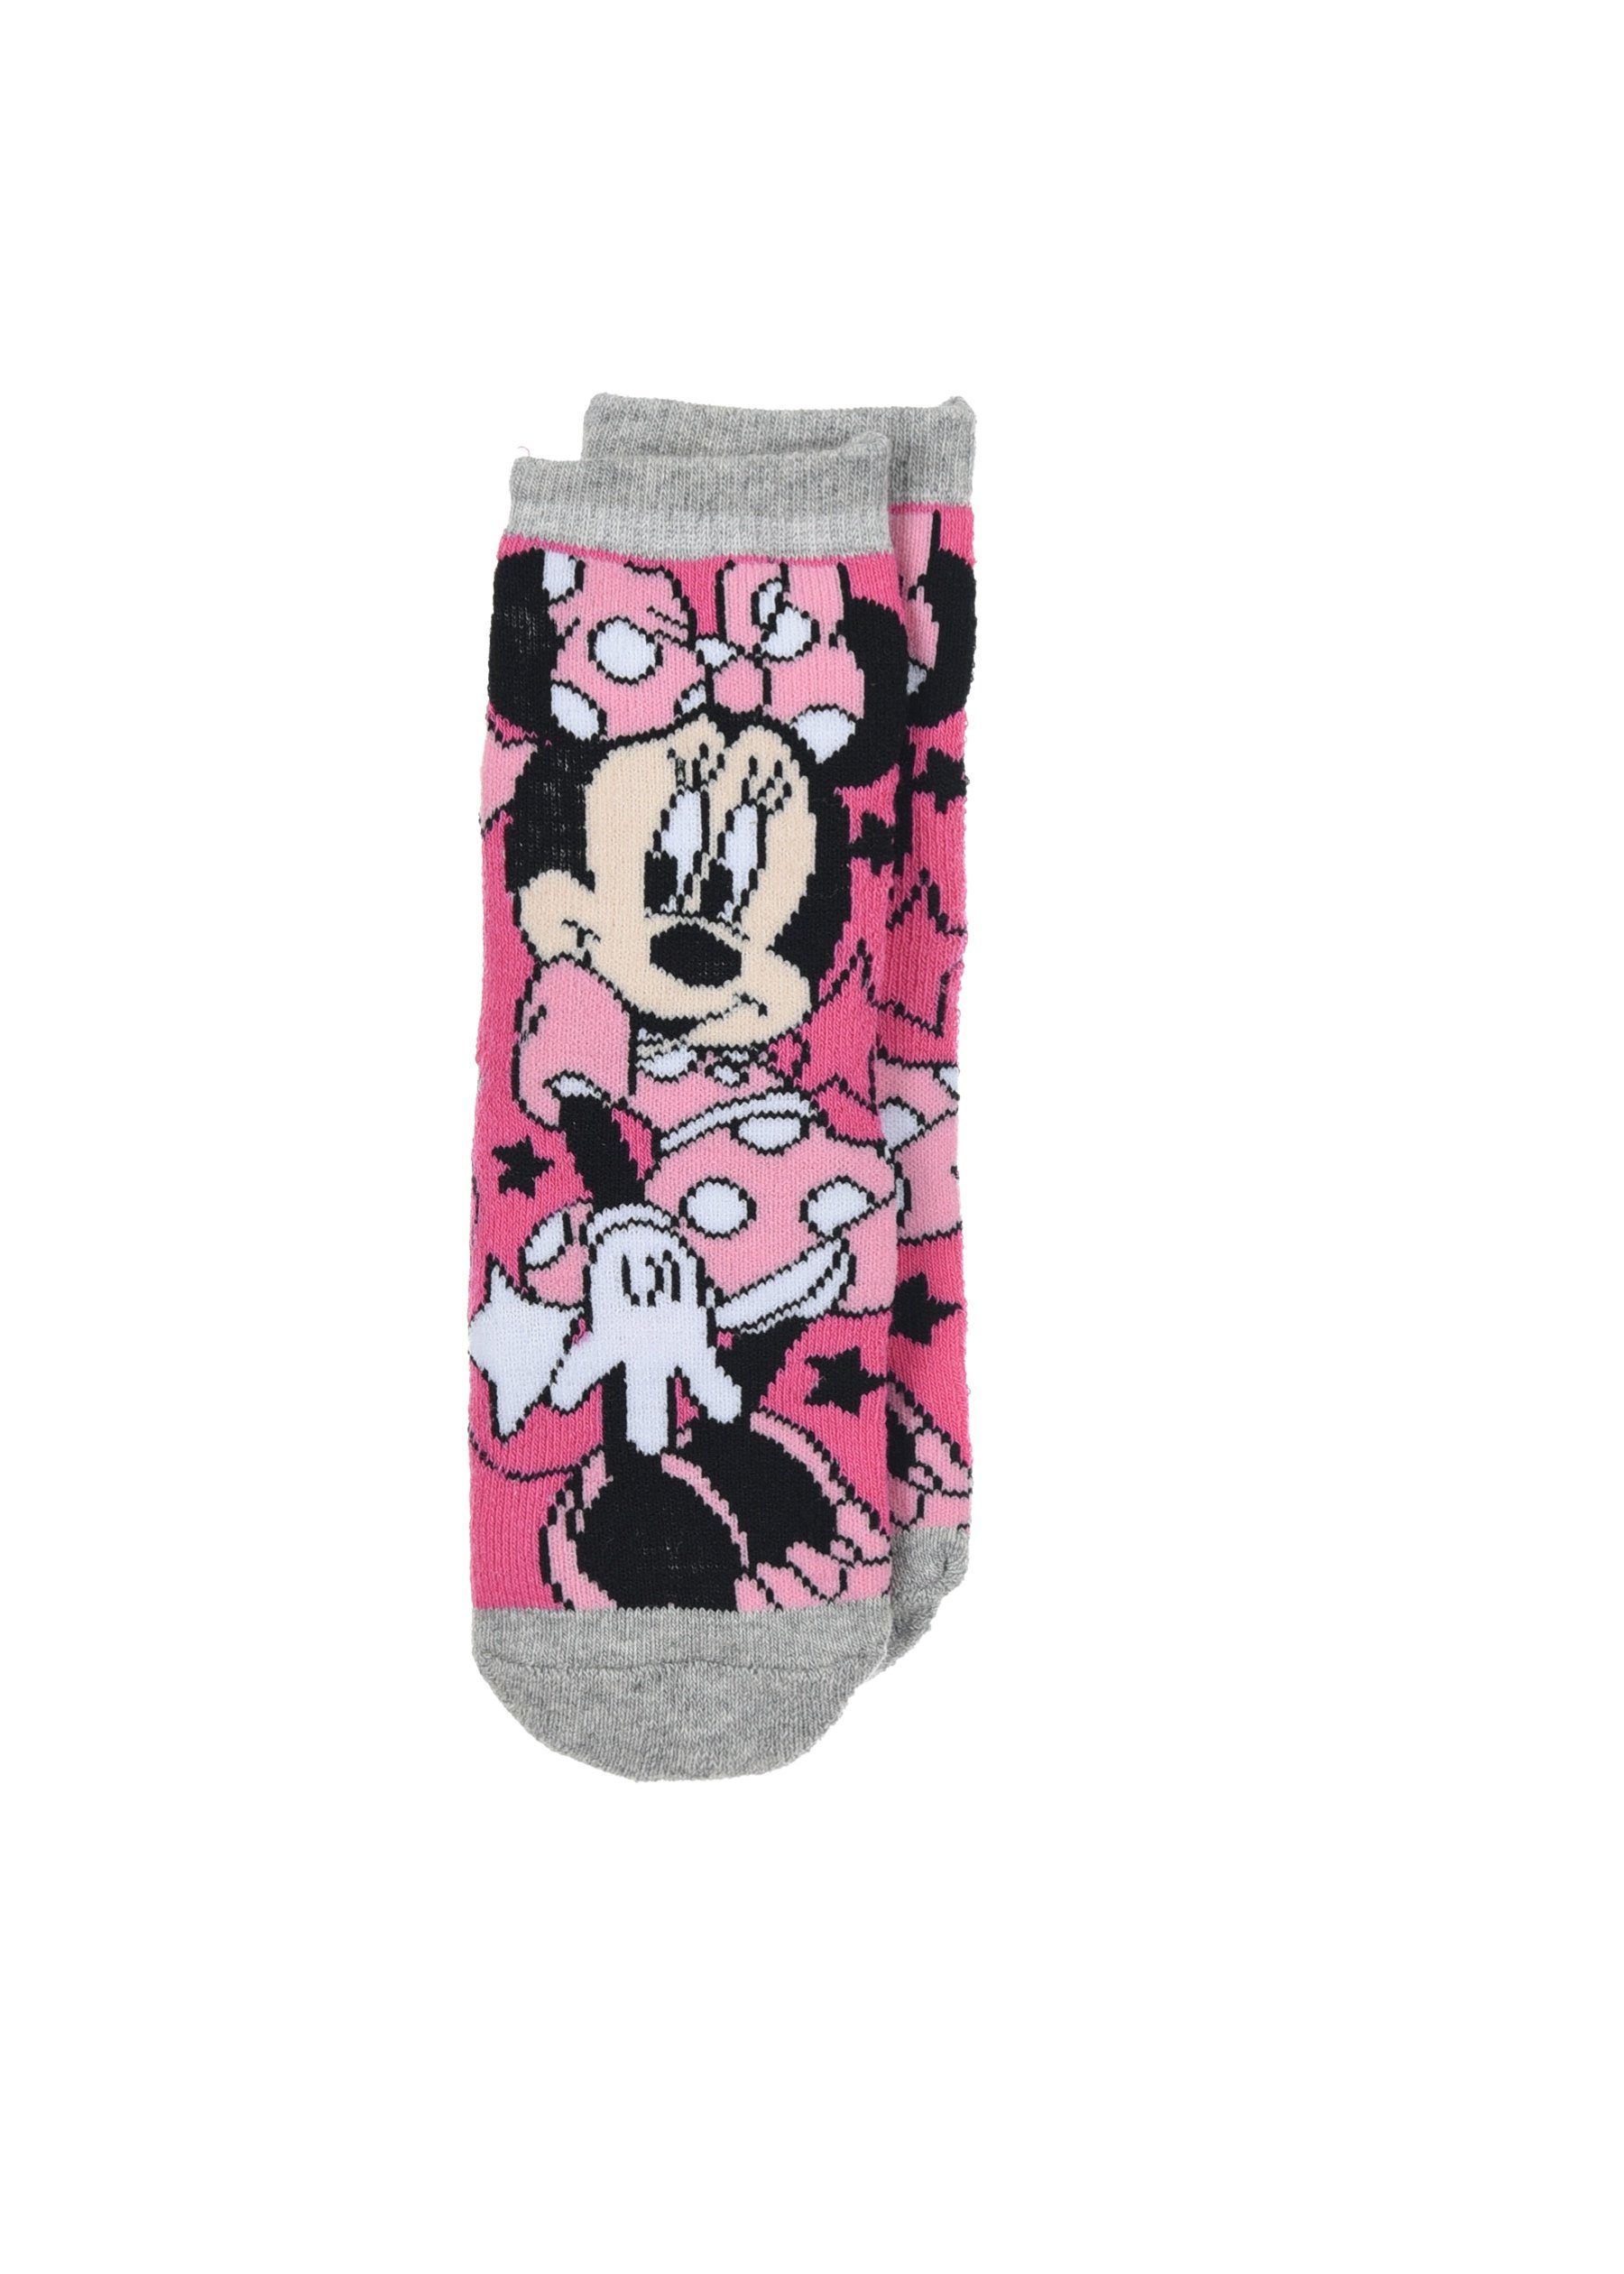 Disney Minnie Mouse Mädchen Strümpfe mit Gummi-Noppen (2-Paar) ABS-Socken Kinder Socken